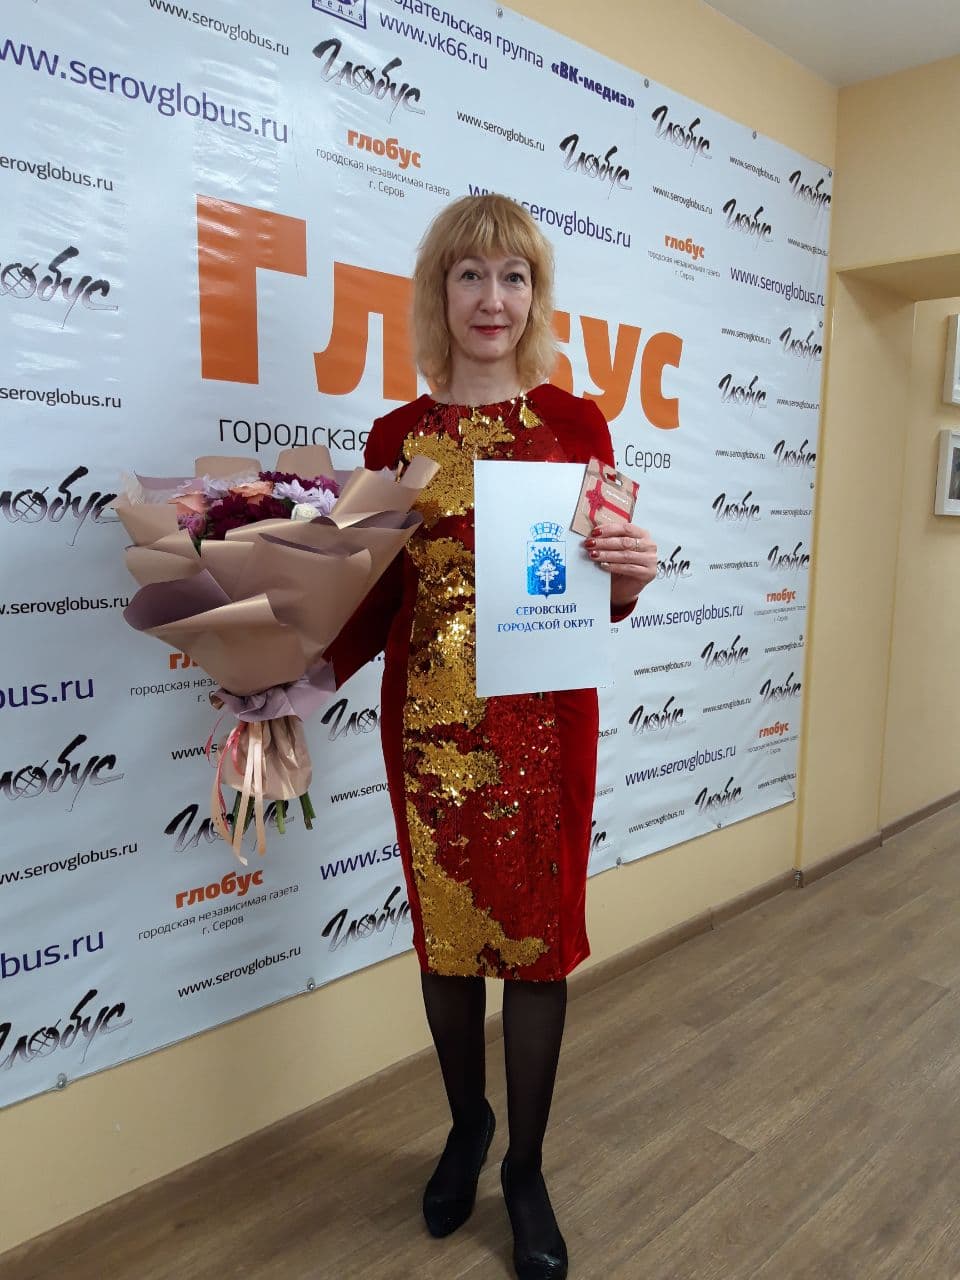 Менеджер газеты "Глобус" награждена Благодарственным письмом администрации Серова